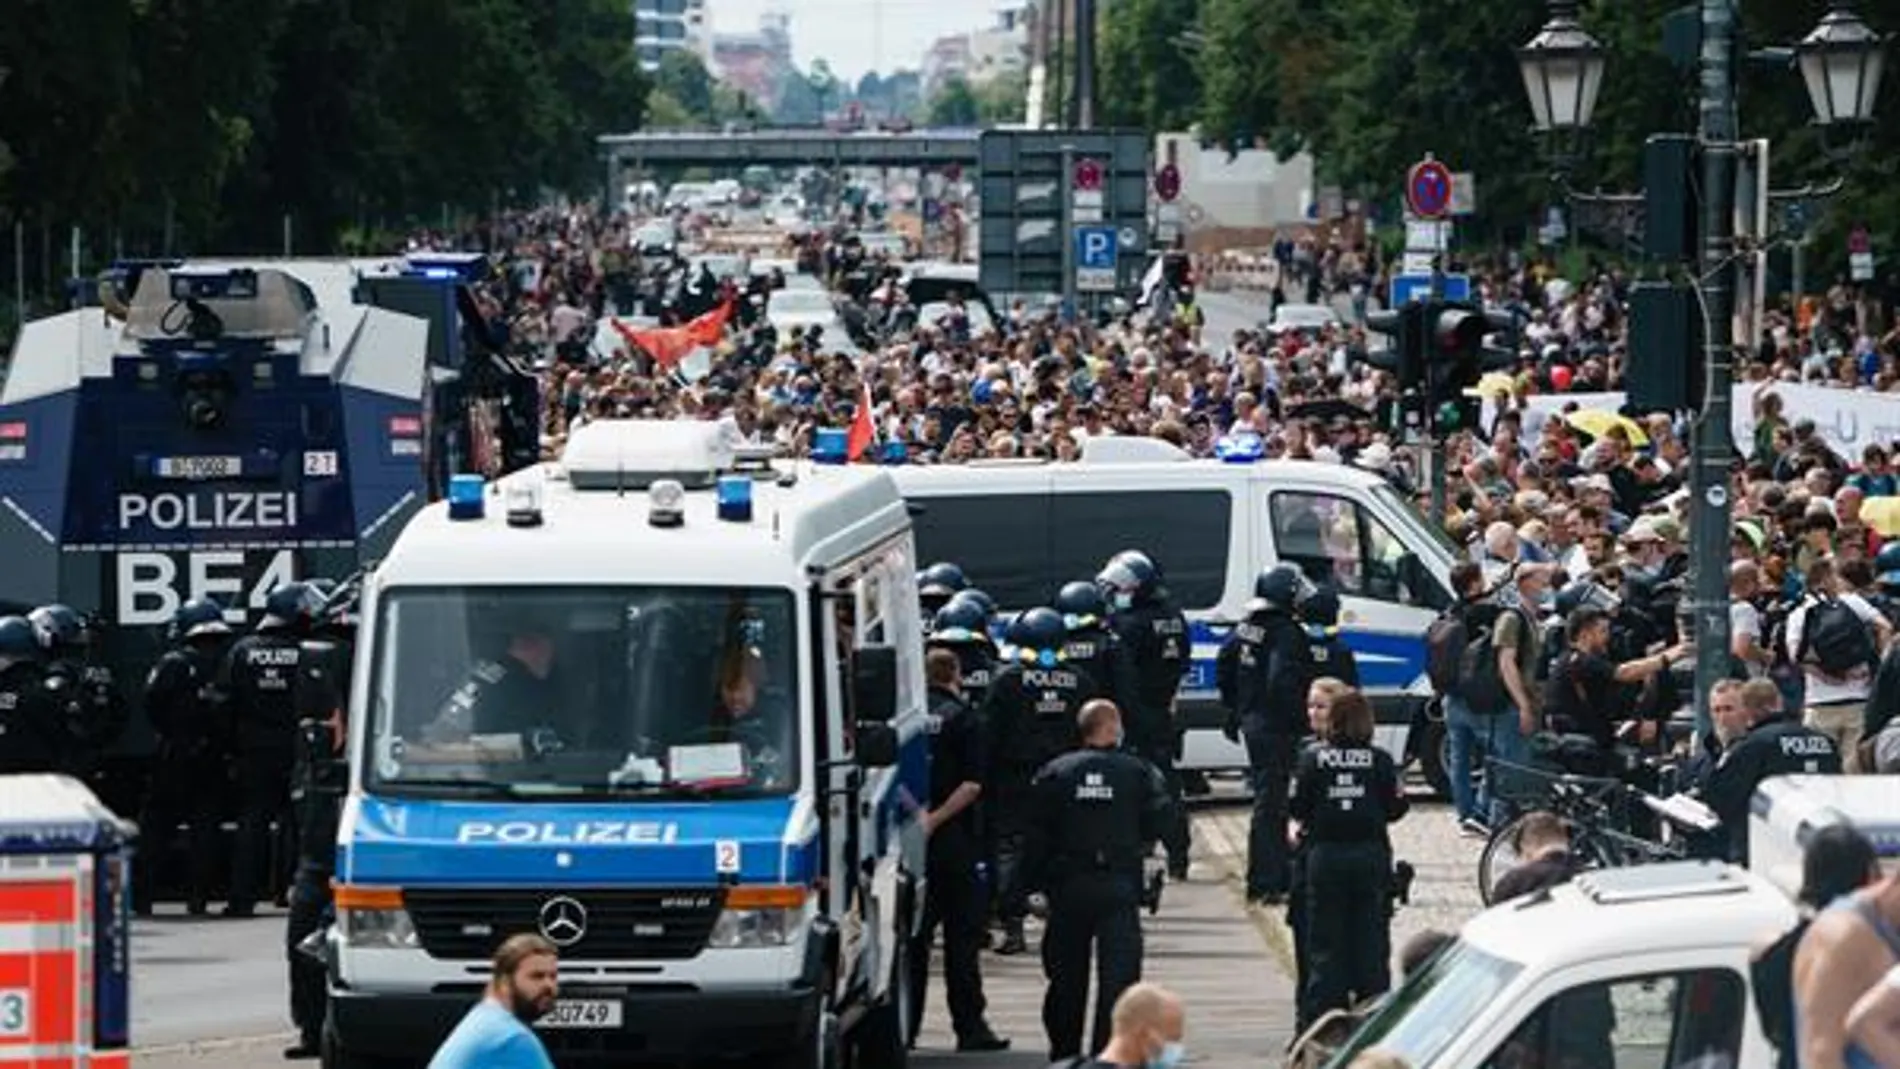 Al menos 500 negacionistas detenidos en Berlín en multitud de protestas no autorizadas contras las medidas anticovid